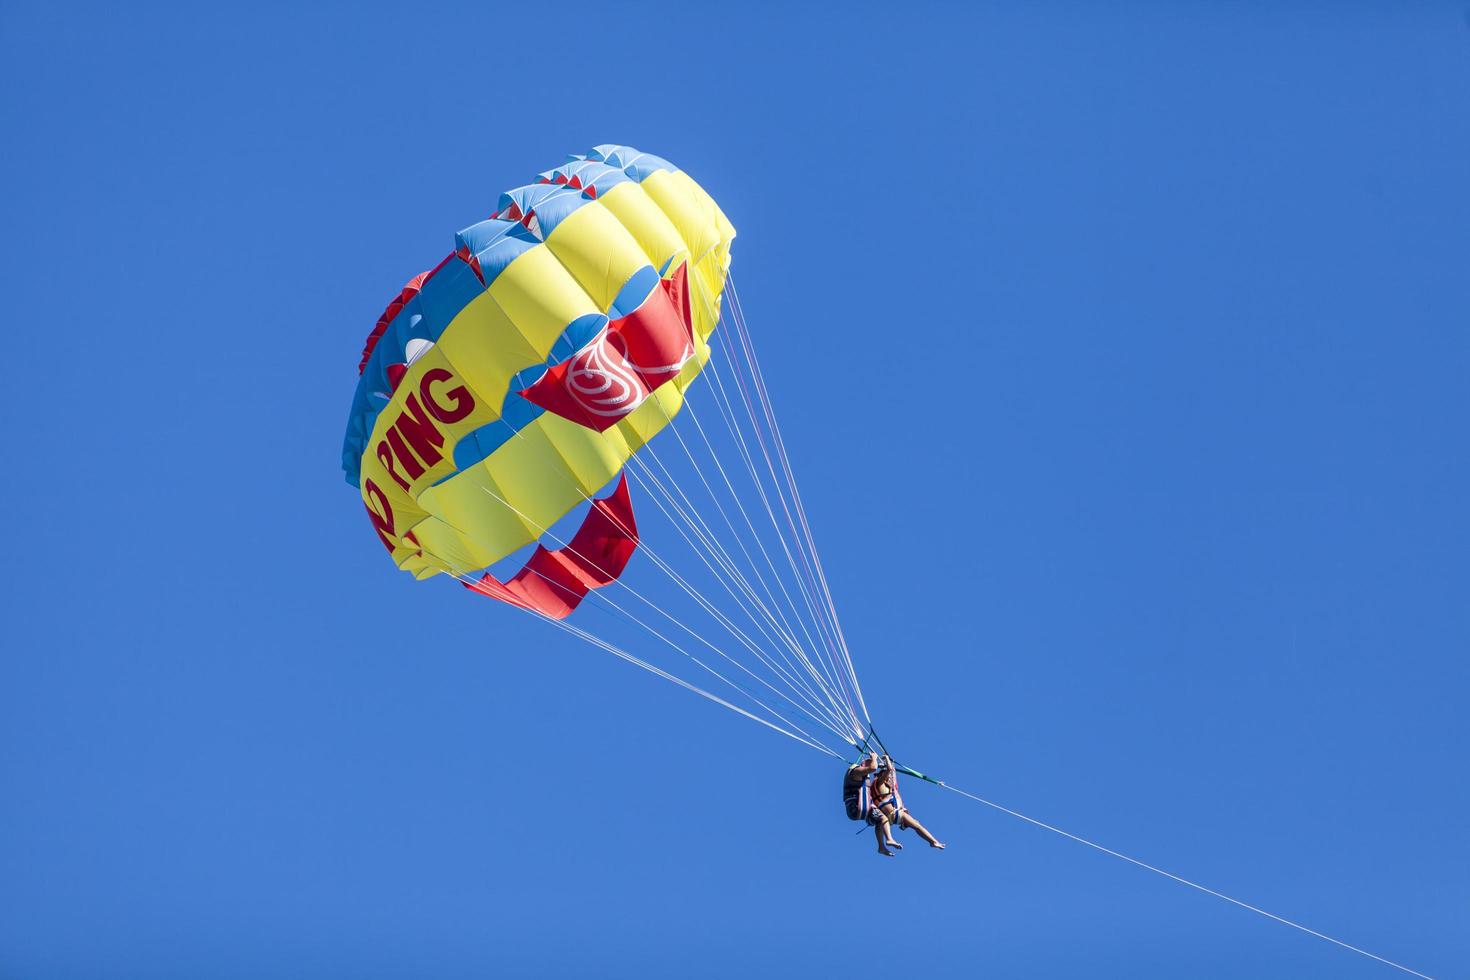 beldibi, turquie, 7 octobre - personnes non identifiées faisant du parachute ascensionnel à beldibi le 7 octobre 2013. le parachute ascensionnel est populaire sur la zone côtière de la turquie et presque tous les principaux hôtels ont une activité de parachute ascensionnel. photo